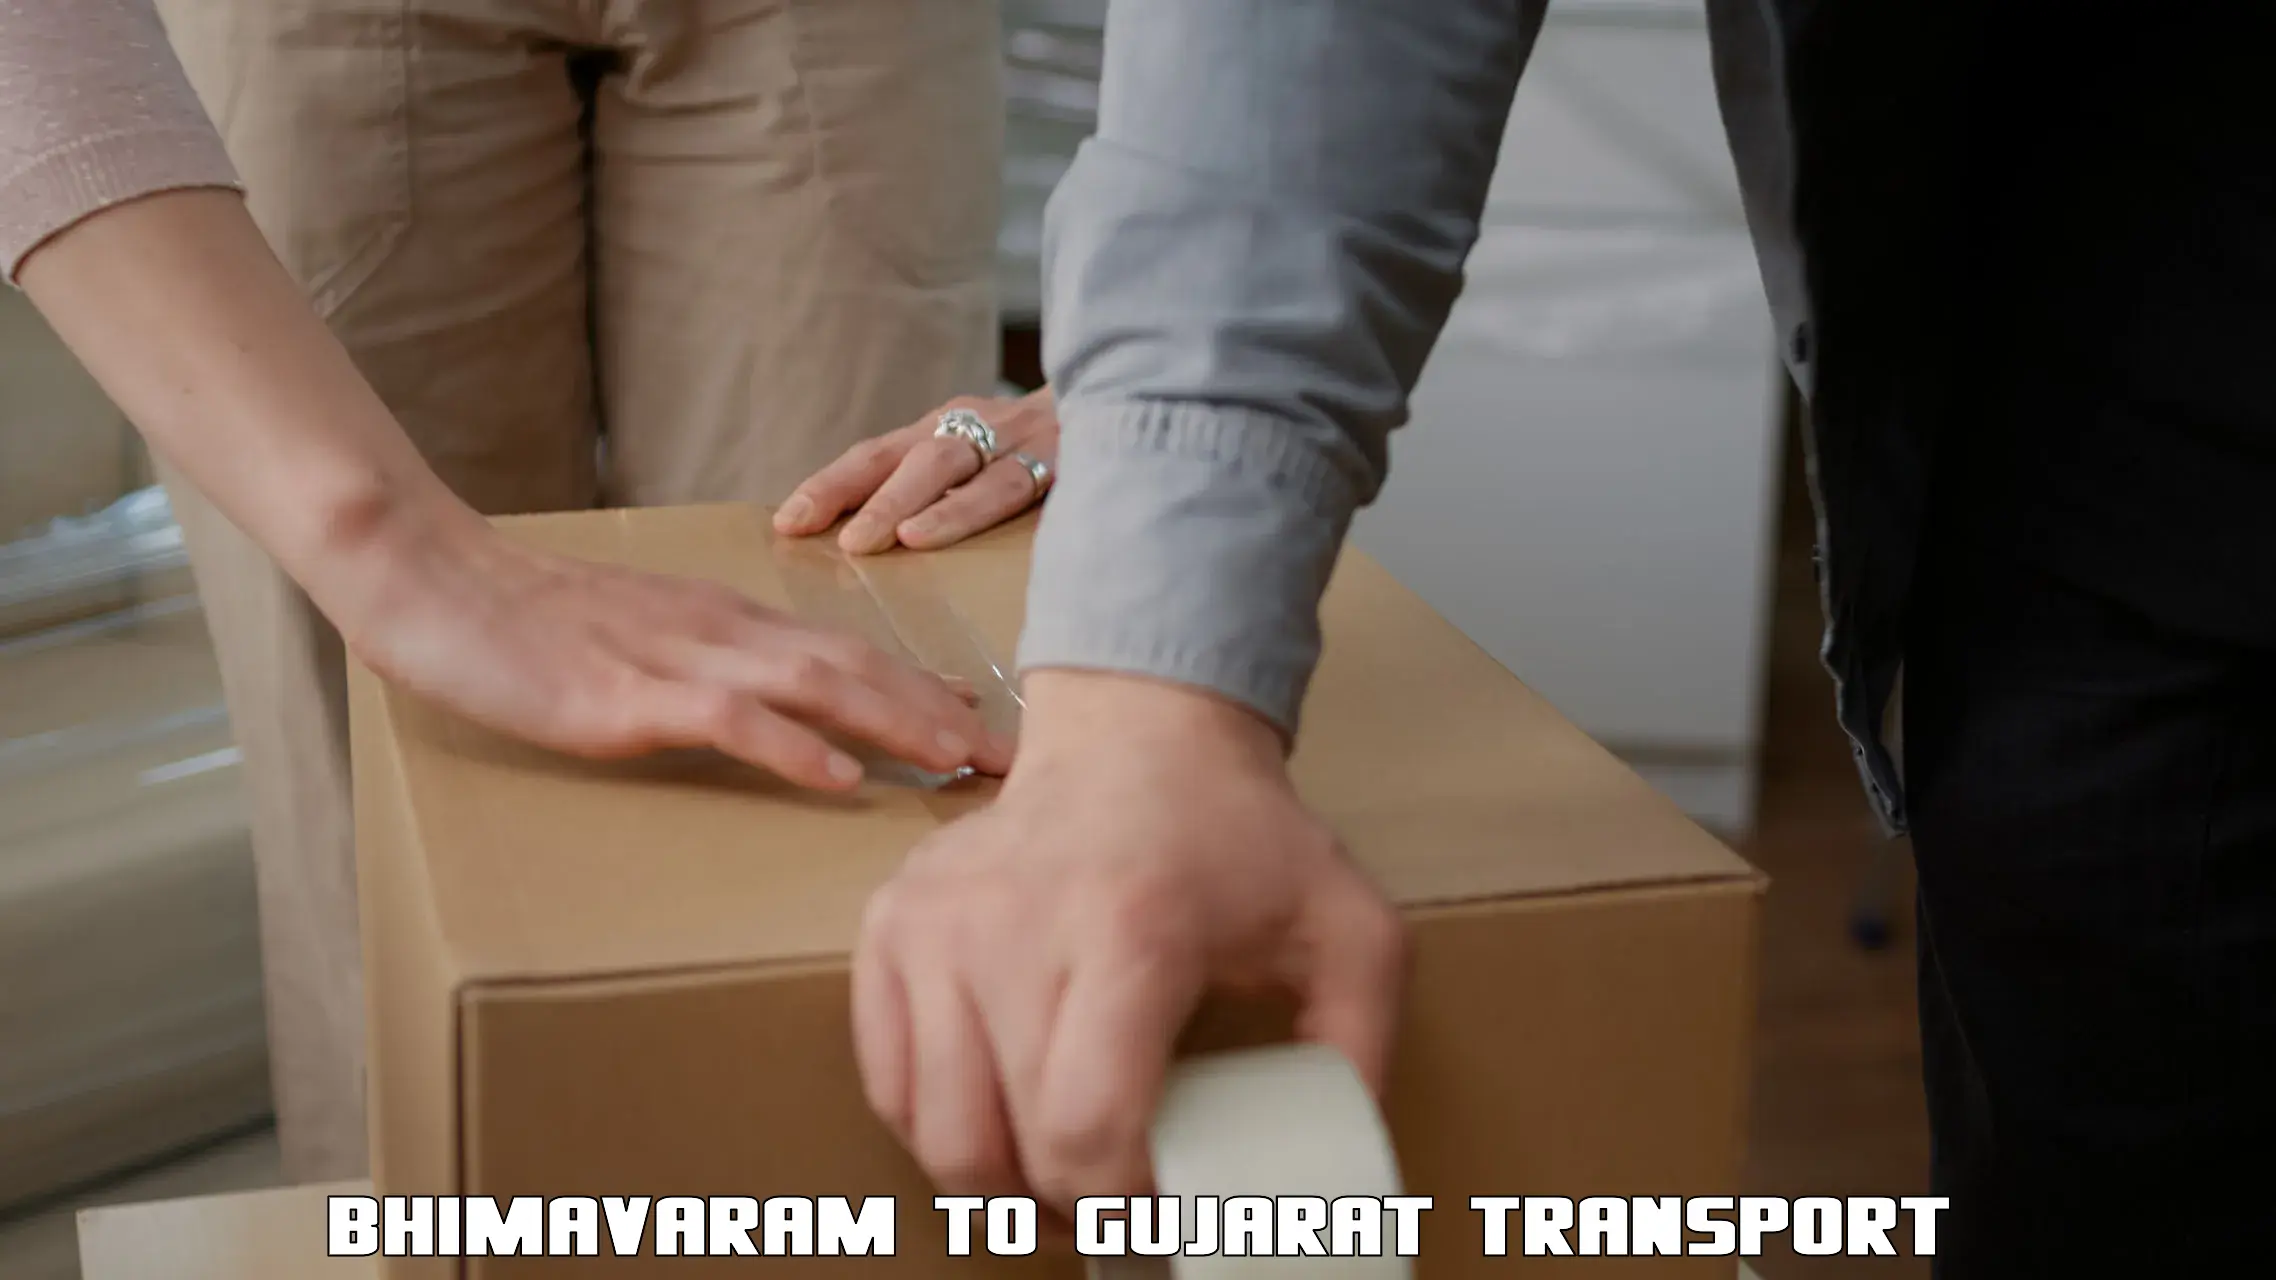 Furniture transport service Bhimavaram to Vadnagar